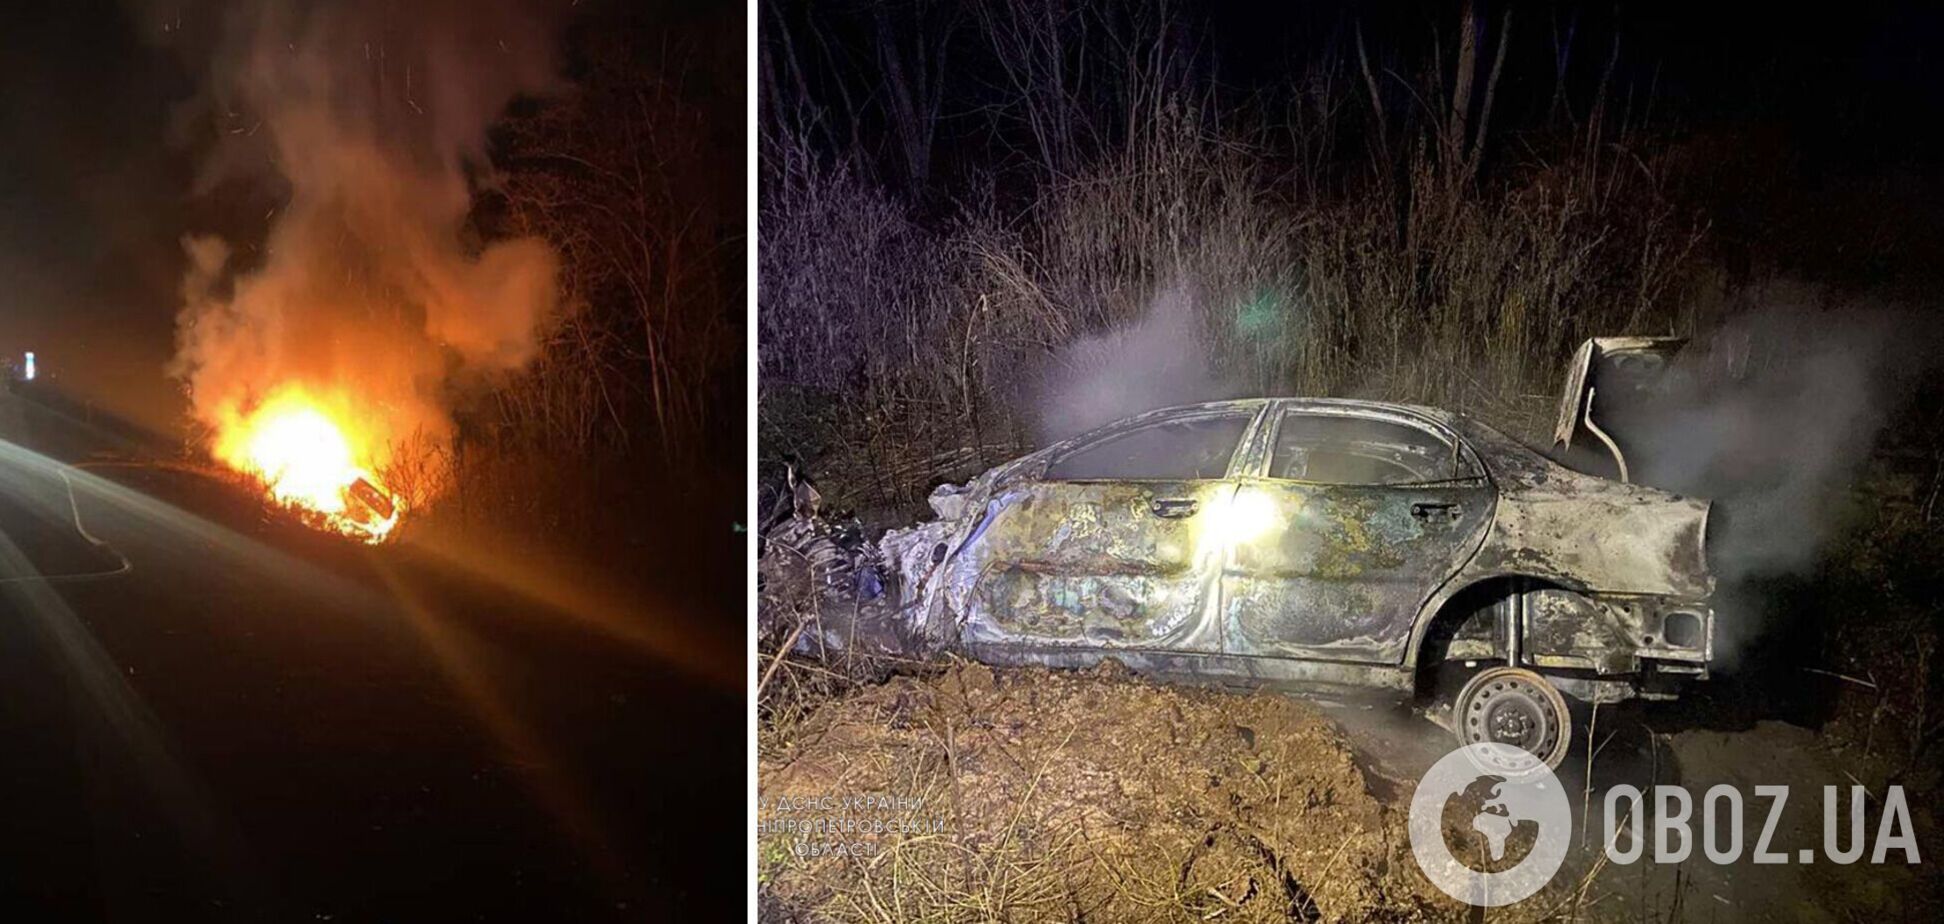 На Днепропетровщине легковушка вспыхнула после столкновения с грузовиком, погиб водитель. Фото